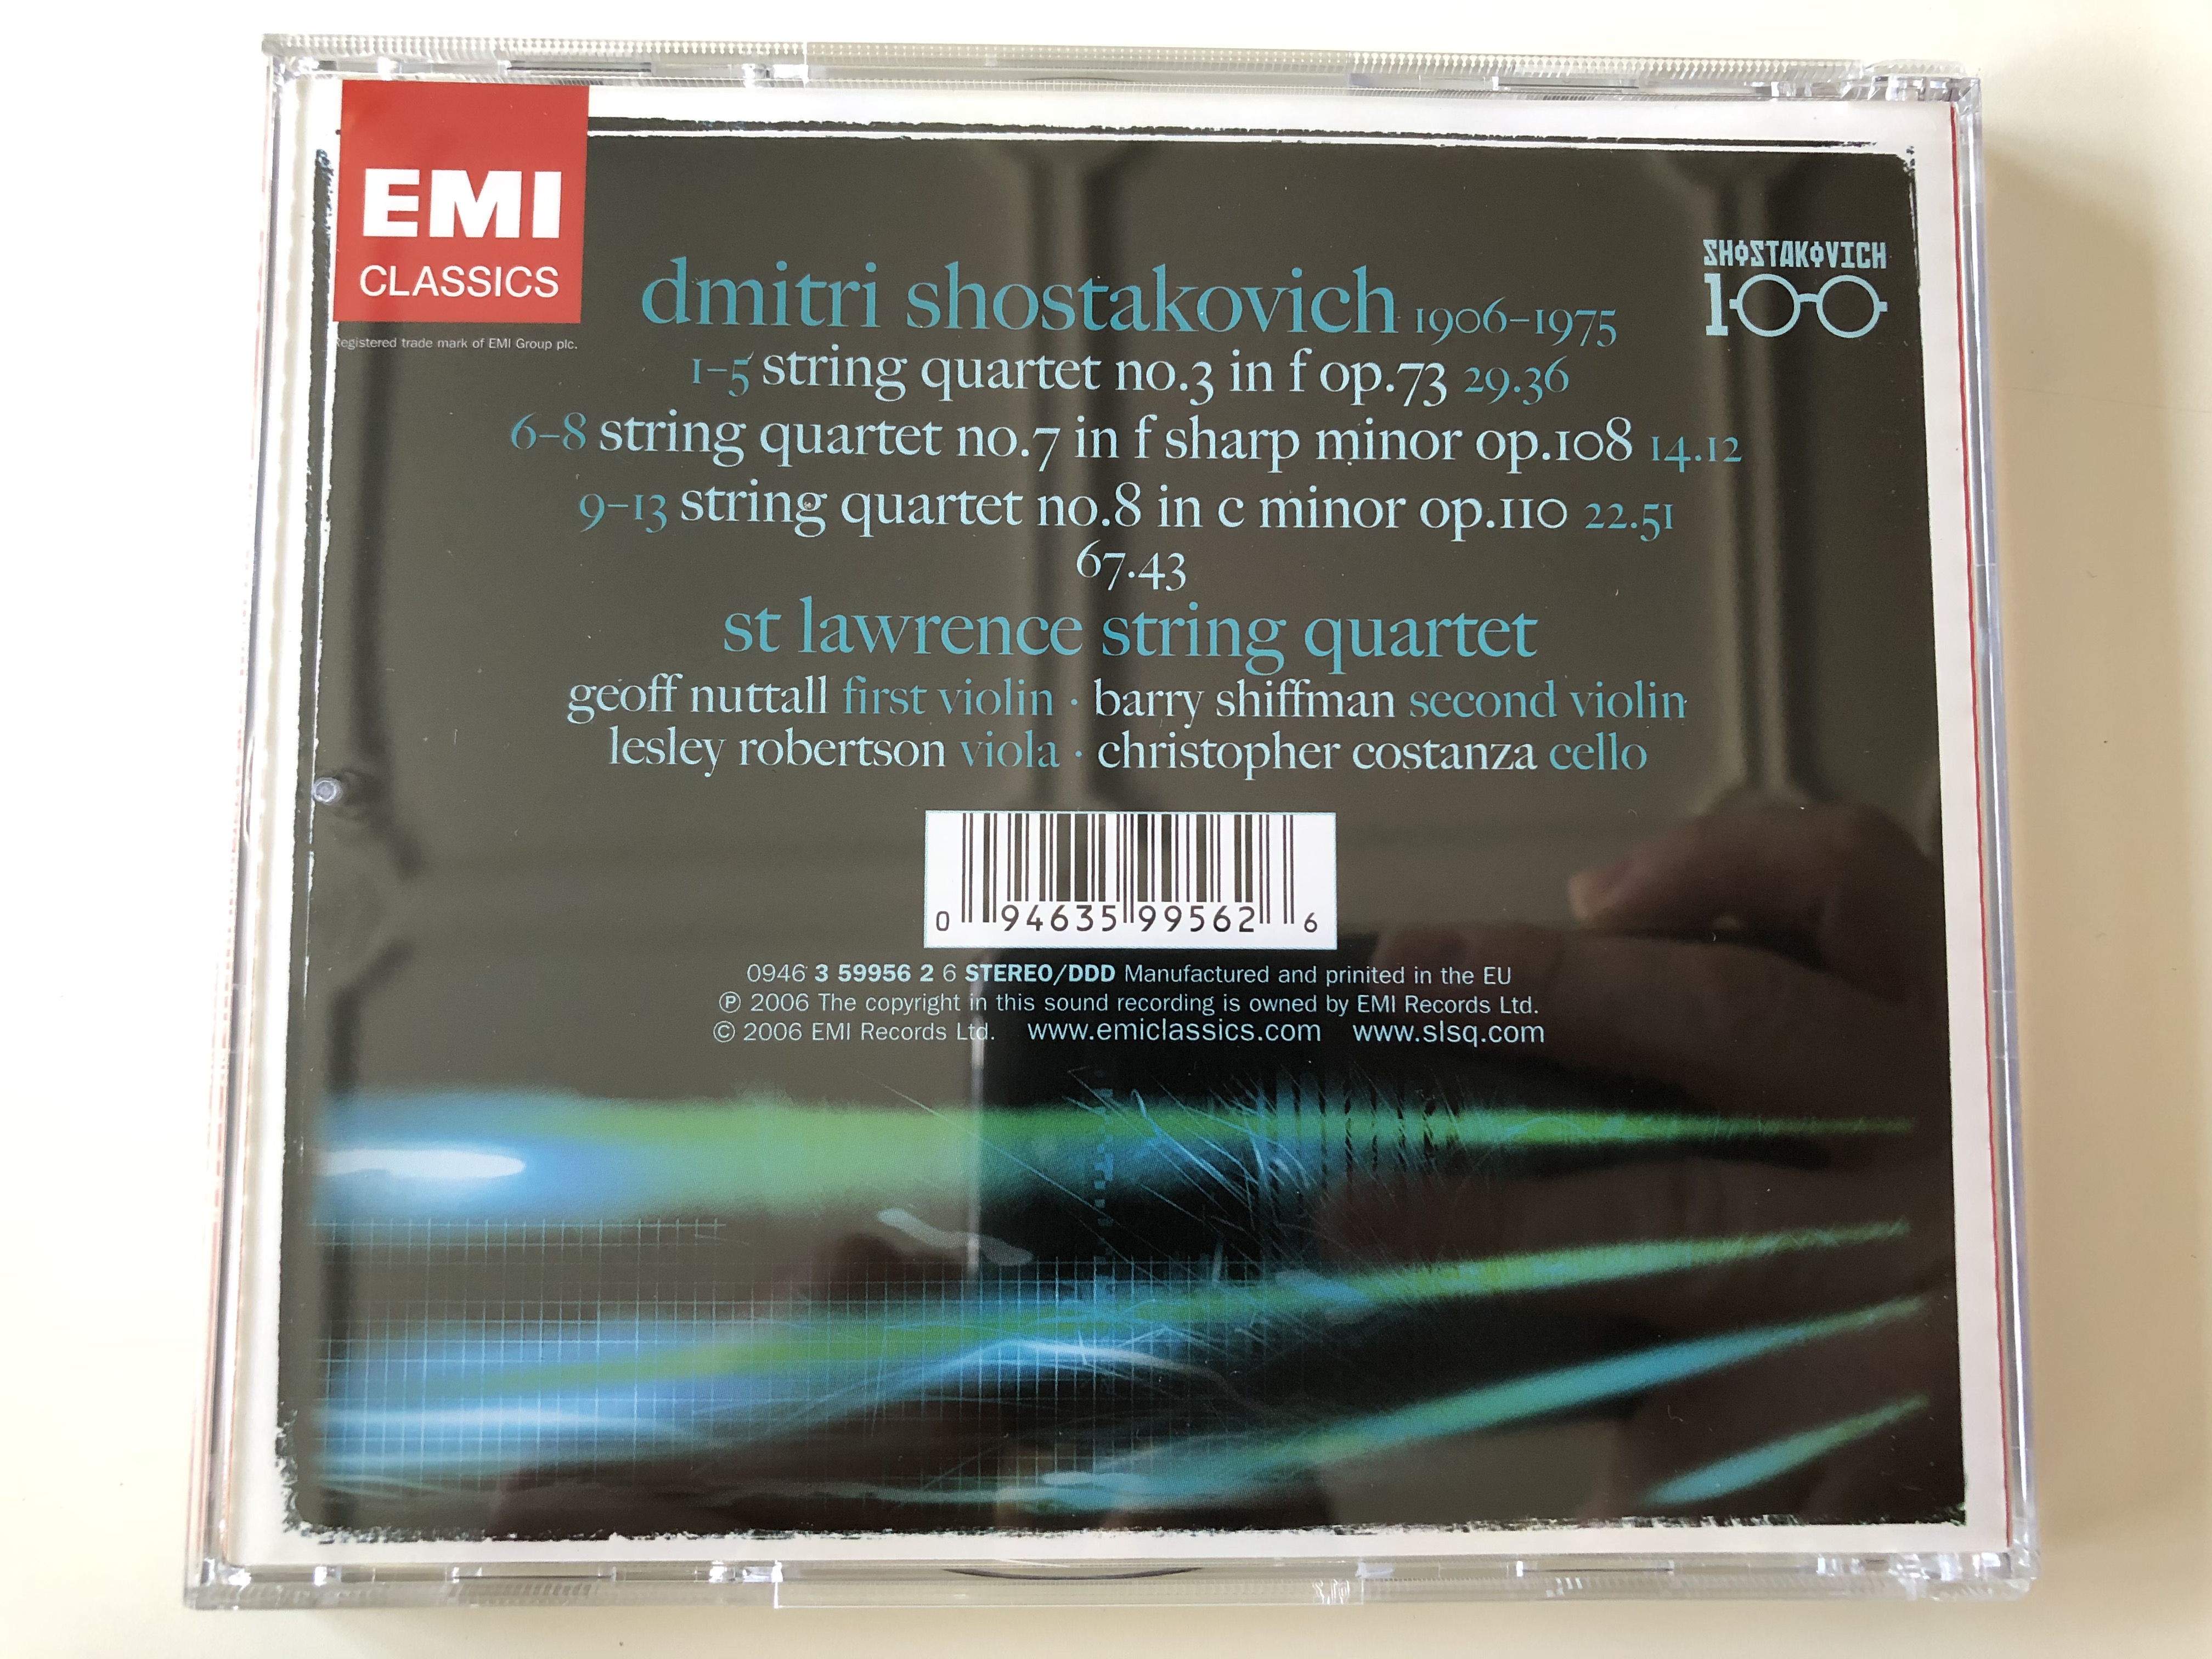 shostakovich-string-quartets-3-7-8-st-lawrence-string-quartet-audio-cd-2006-stereo-3-59956-2-12-.jpg